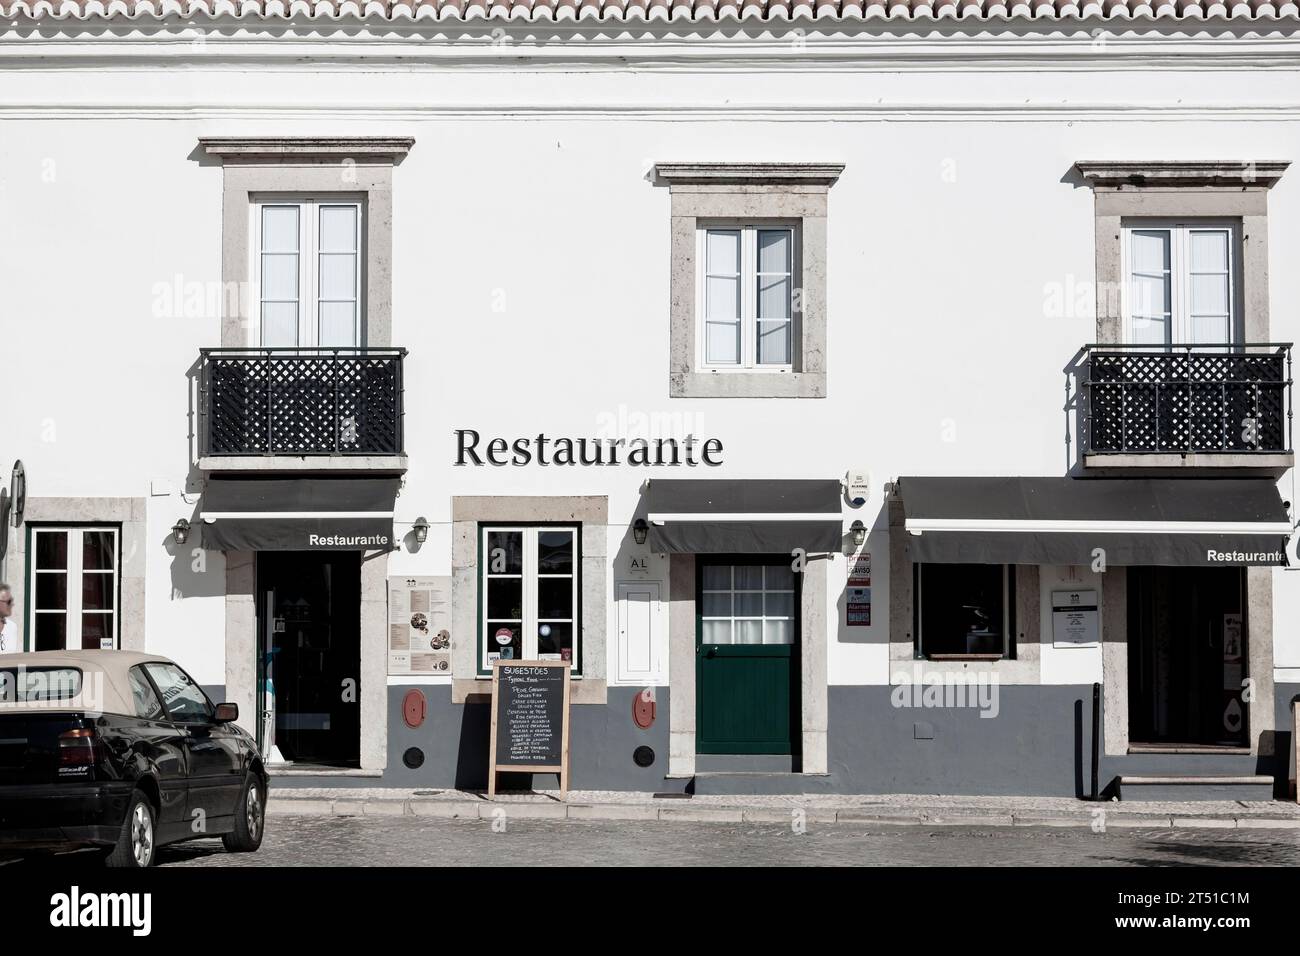 Restaurante in the historic centre of Faro, Algarve, Portugal Stock Photo